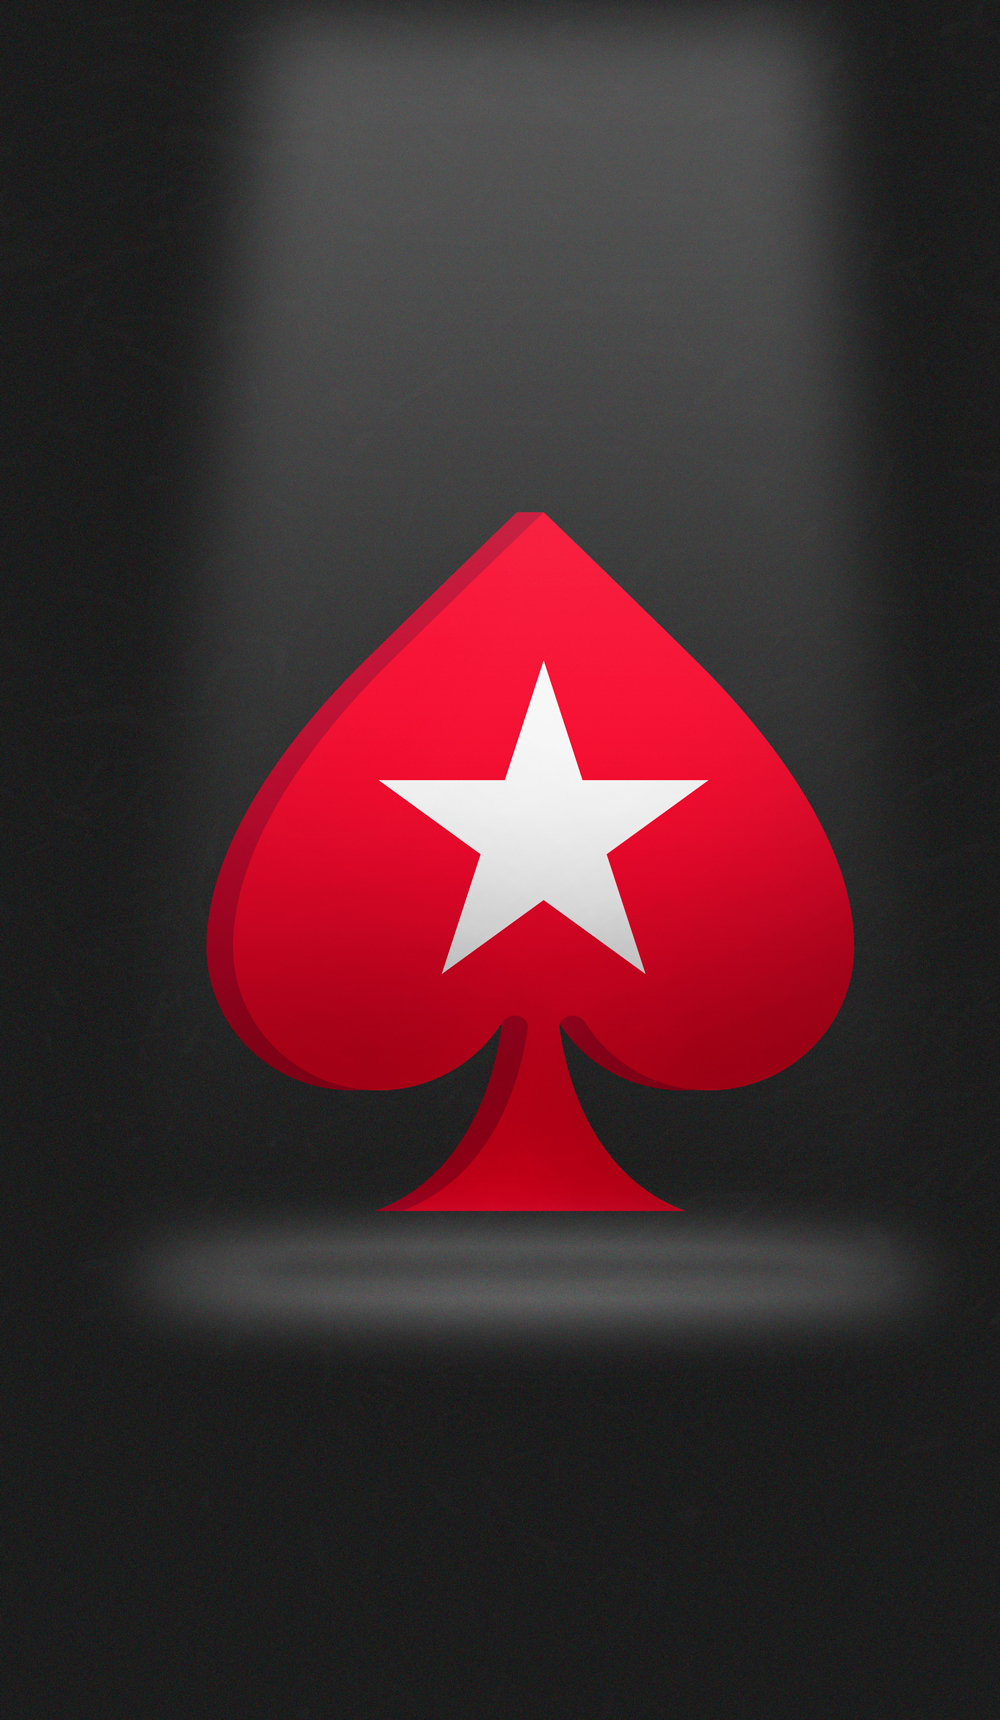 Загружайте стационарный клиент или мобильное приложение для устройств на базе Android / iOS и наслаждайтесь любимым покером в режиме 24/7